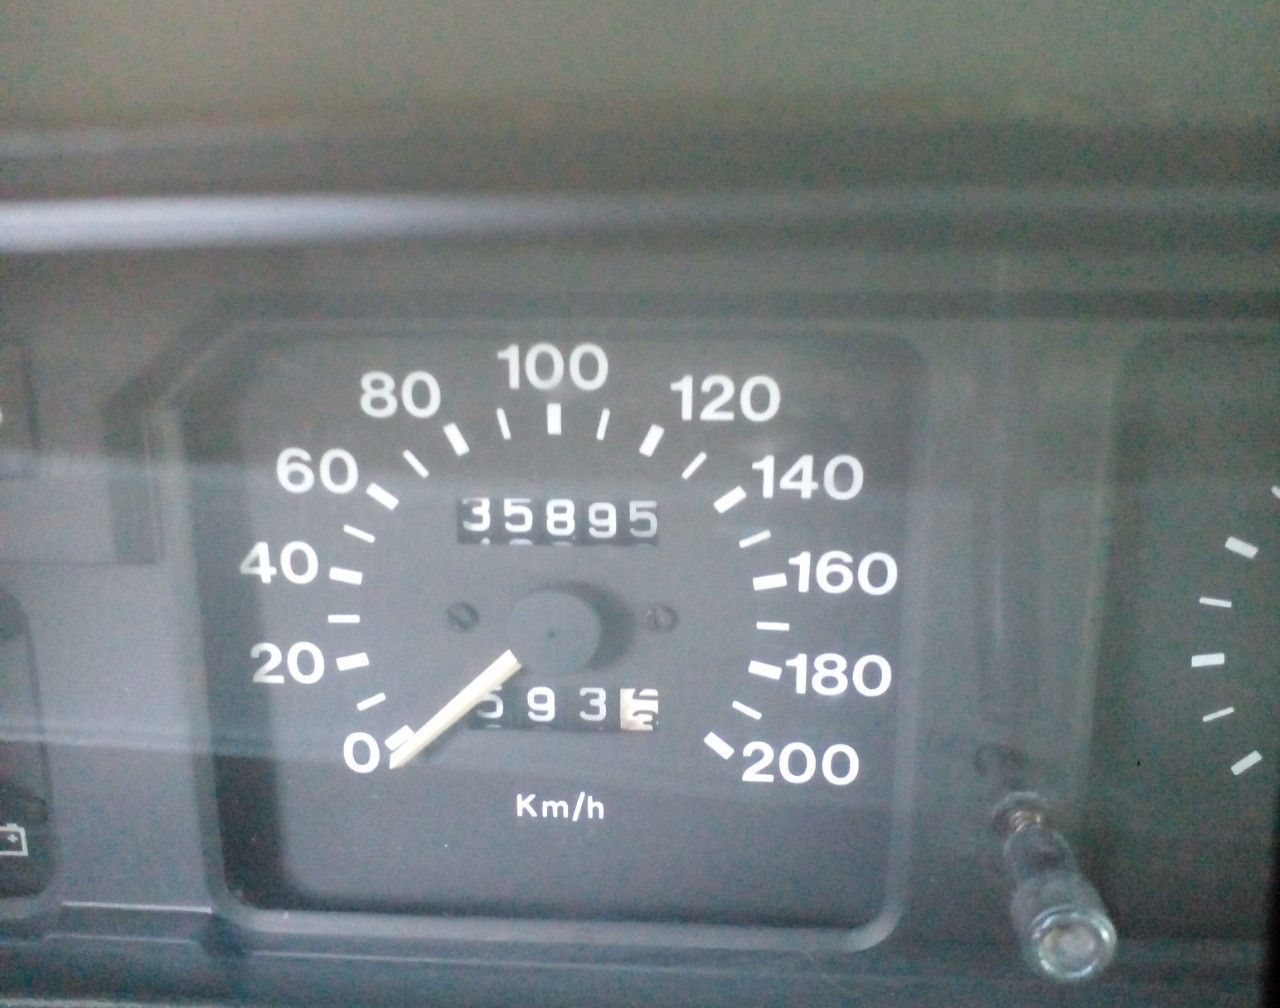 Peugeot 504 Usado en Mendoza, deRuedas